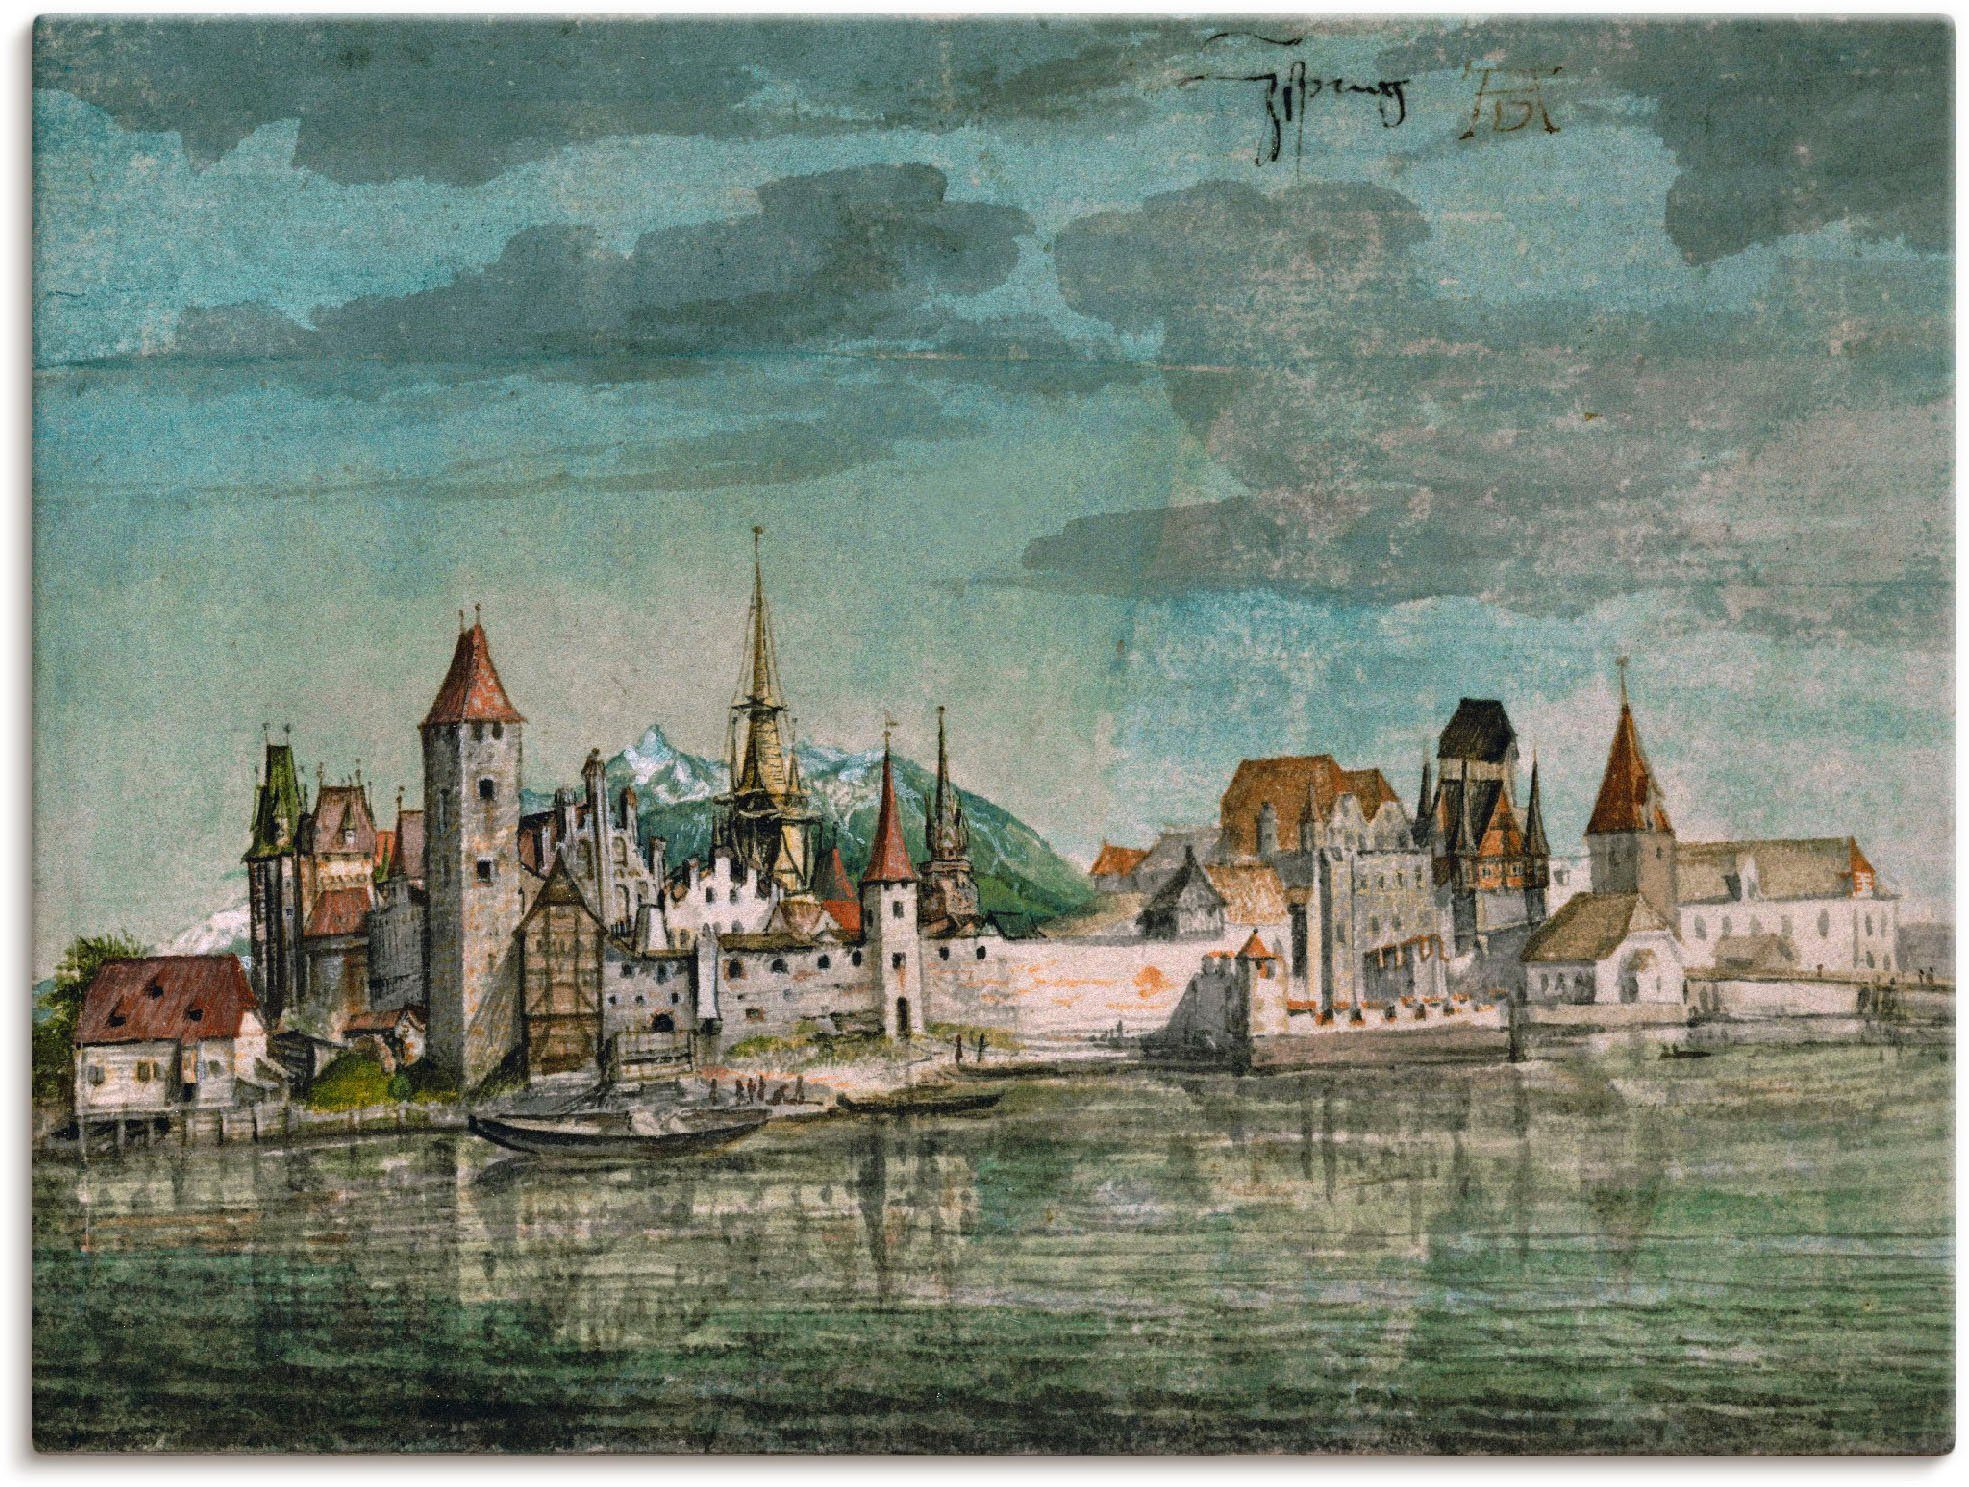 Artland Artprint Innsbruck gezien vanuit het noorden. 1494. in vele afmetingen & productsoorten -artprint op linnen, poster, muursticker / wandfolie ook geschikt voor de badkamer (